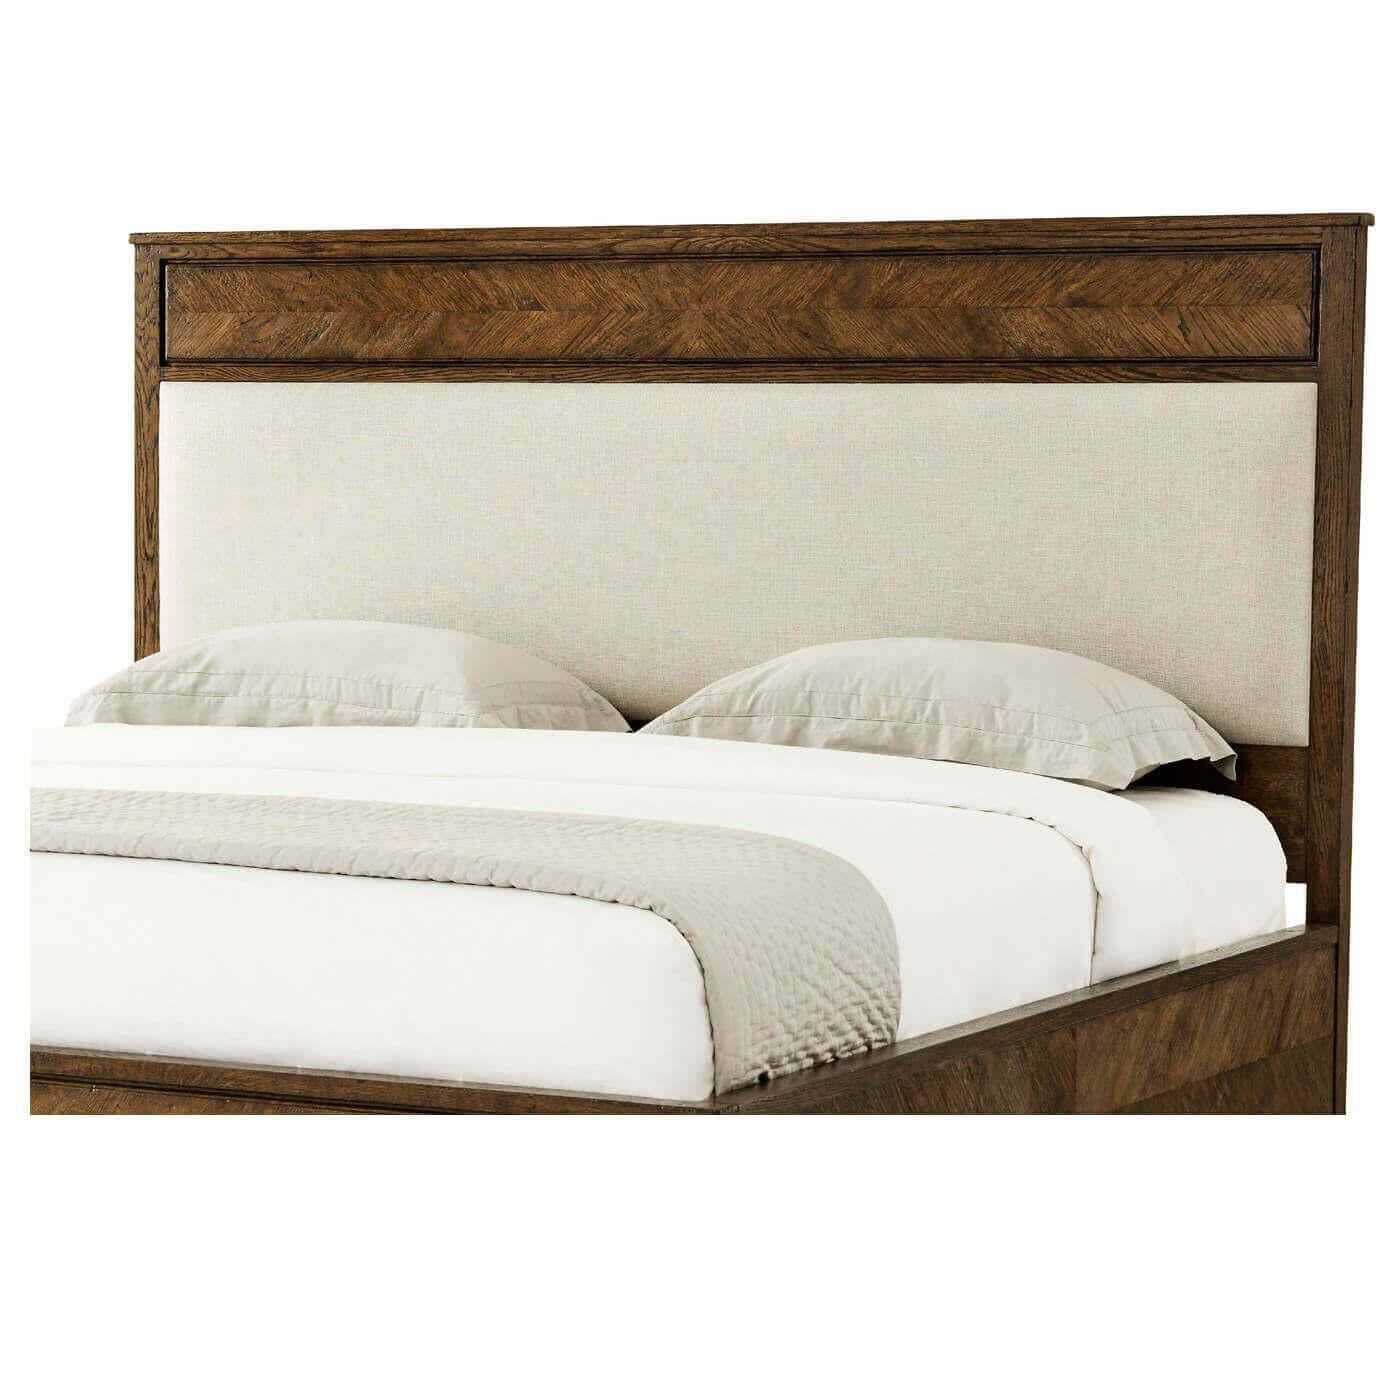 Ein California King Bett aus rustikaler Eiche mit Parkett. Es hat eine klassische Silhouette mit einem gepolsterten Paneel-Kopfteil mit einer gerahmten Eichenholz-Seitenleiste und konisch zulaufenden Beinen. 

Abmessungen: 77,5